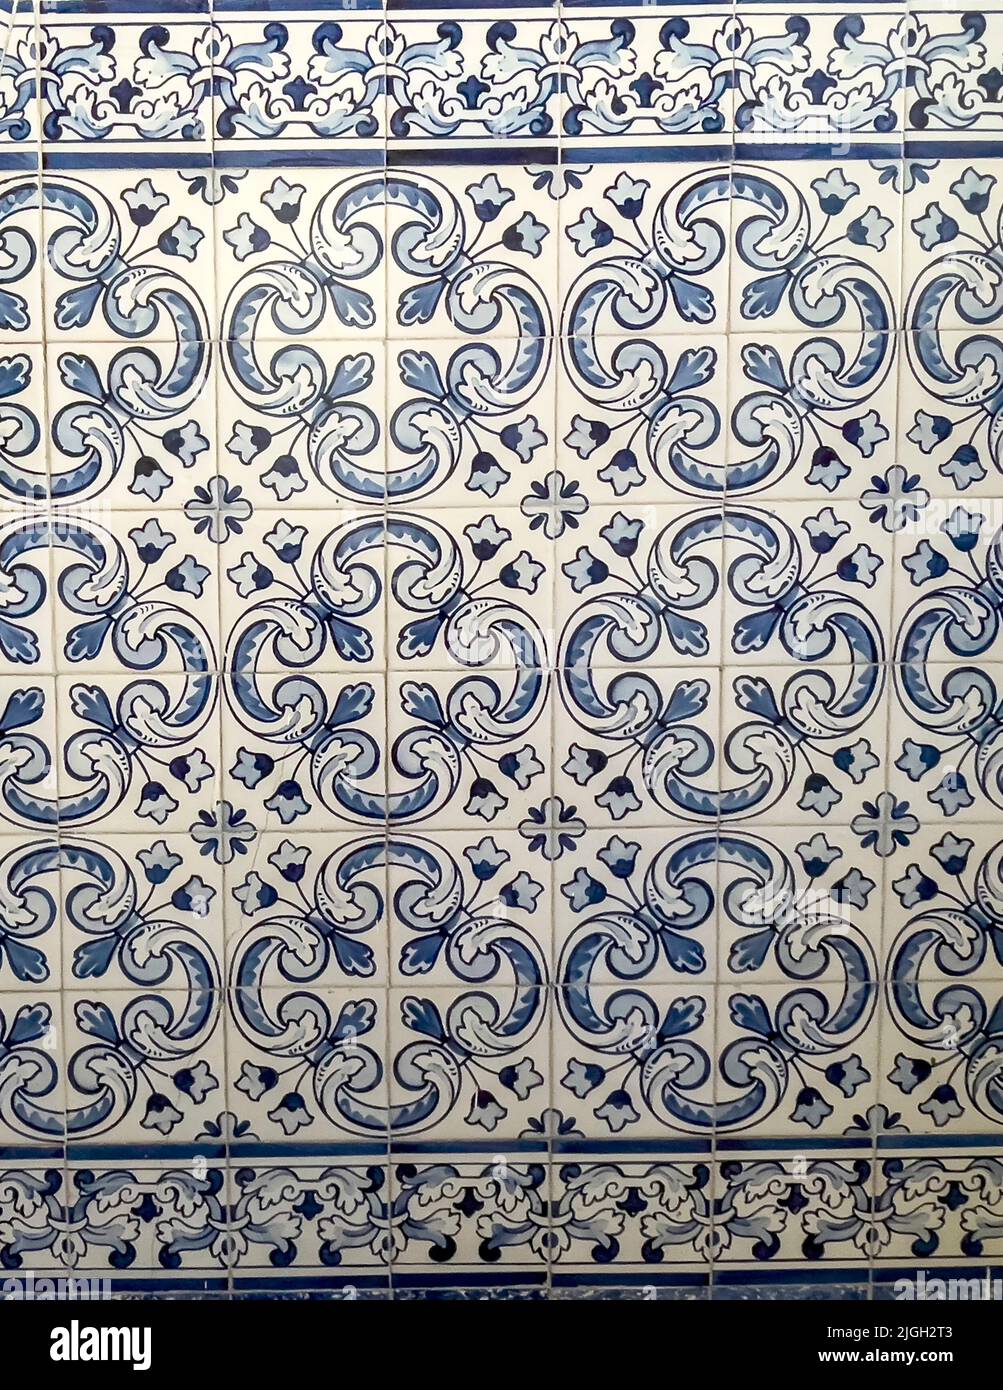 Azulejos tradicionales portugueses de color azul que decoran la escalera principal del monasterio de San Miguel de Refojos, construido en 1755 en estilo barroco para el BE Foto de stock